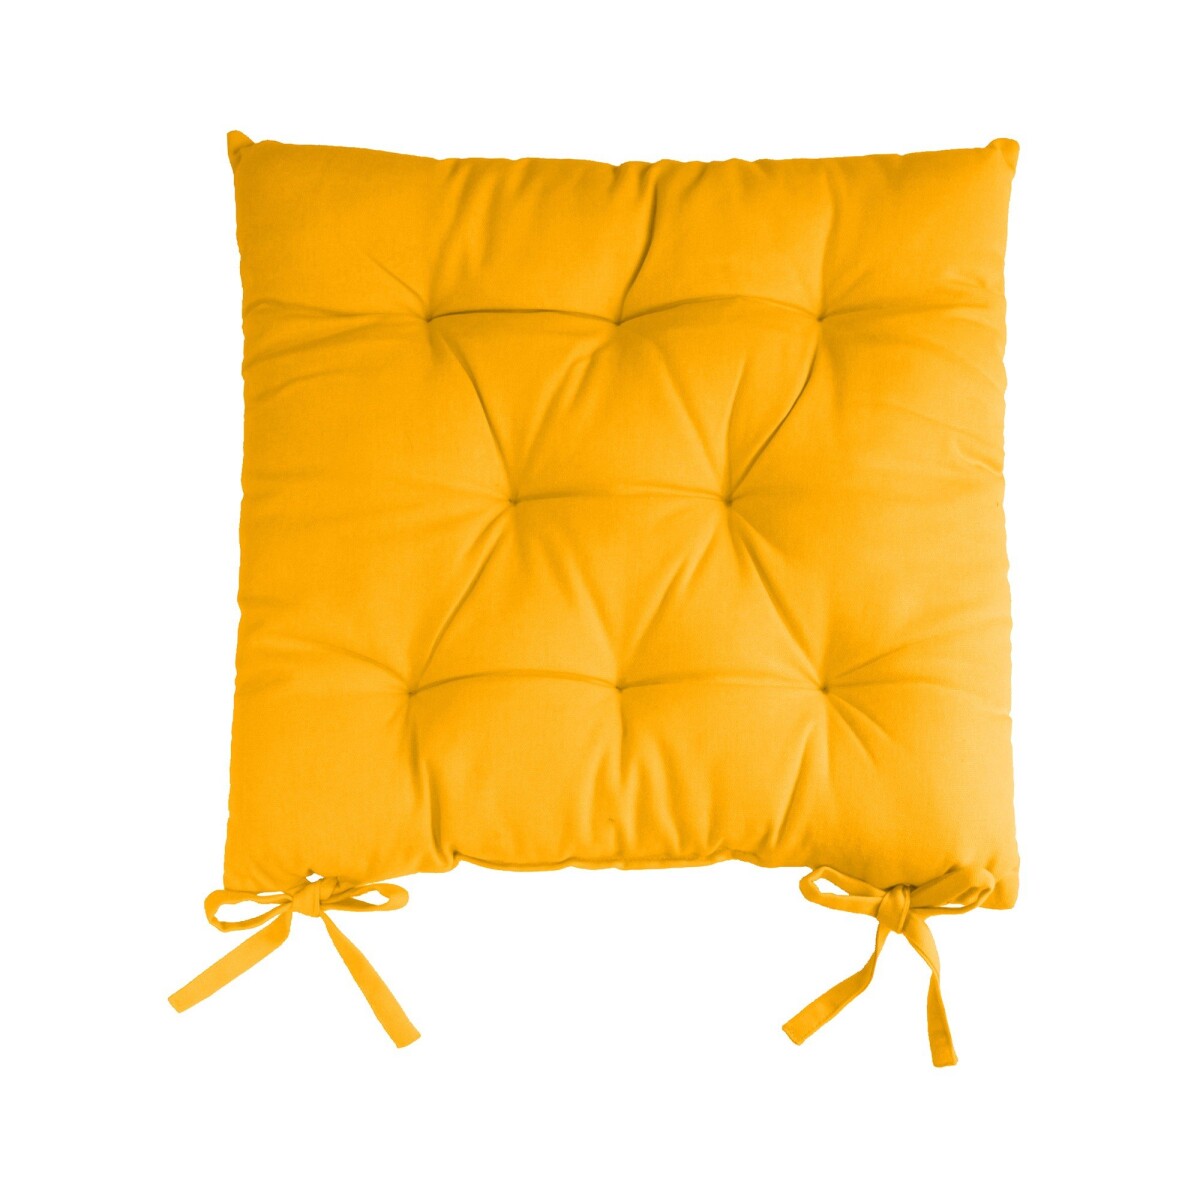 Blancheporte Sada 2 jednobarevných podsedků na židli zn. Colombine žlutá 40x40x7cm